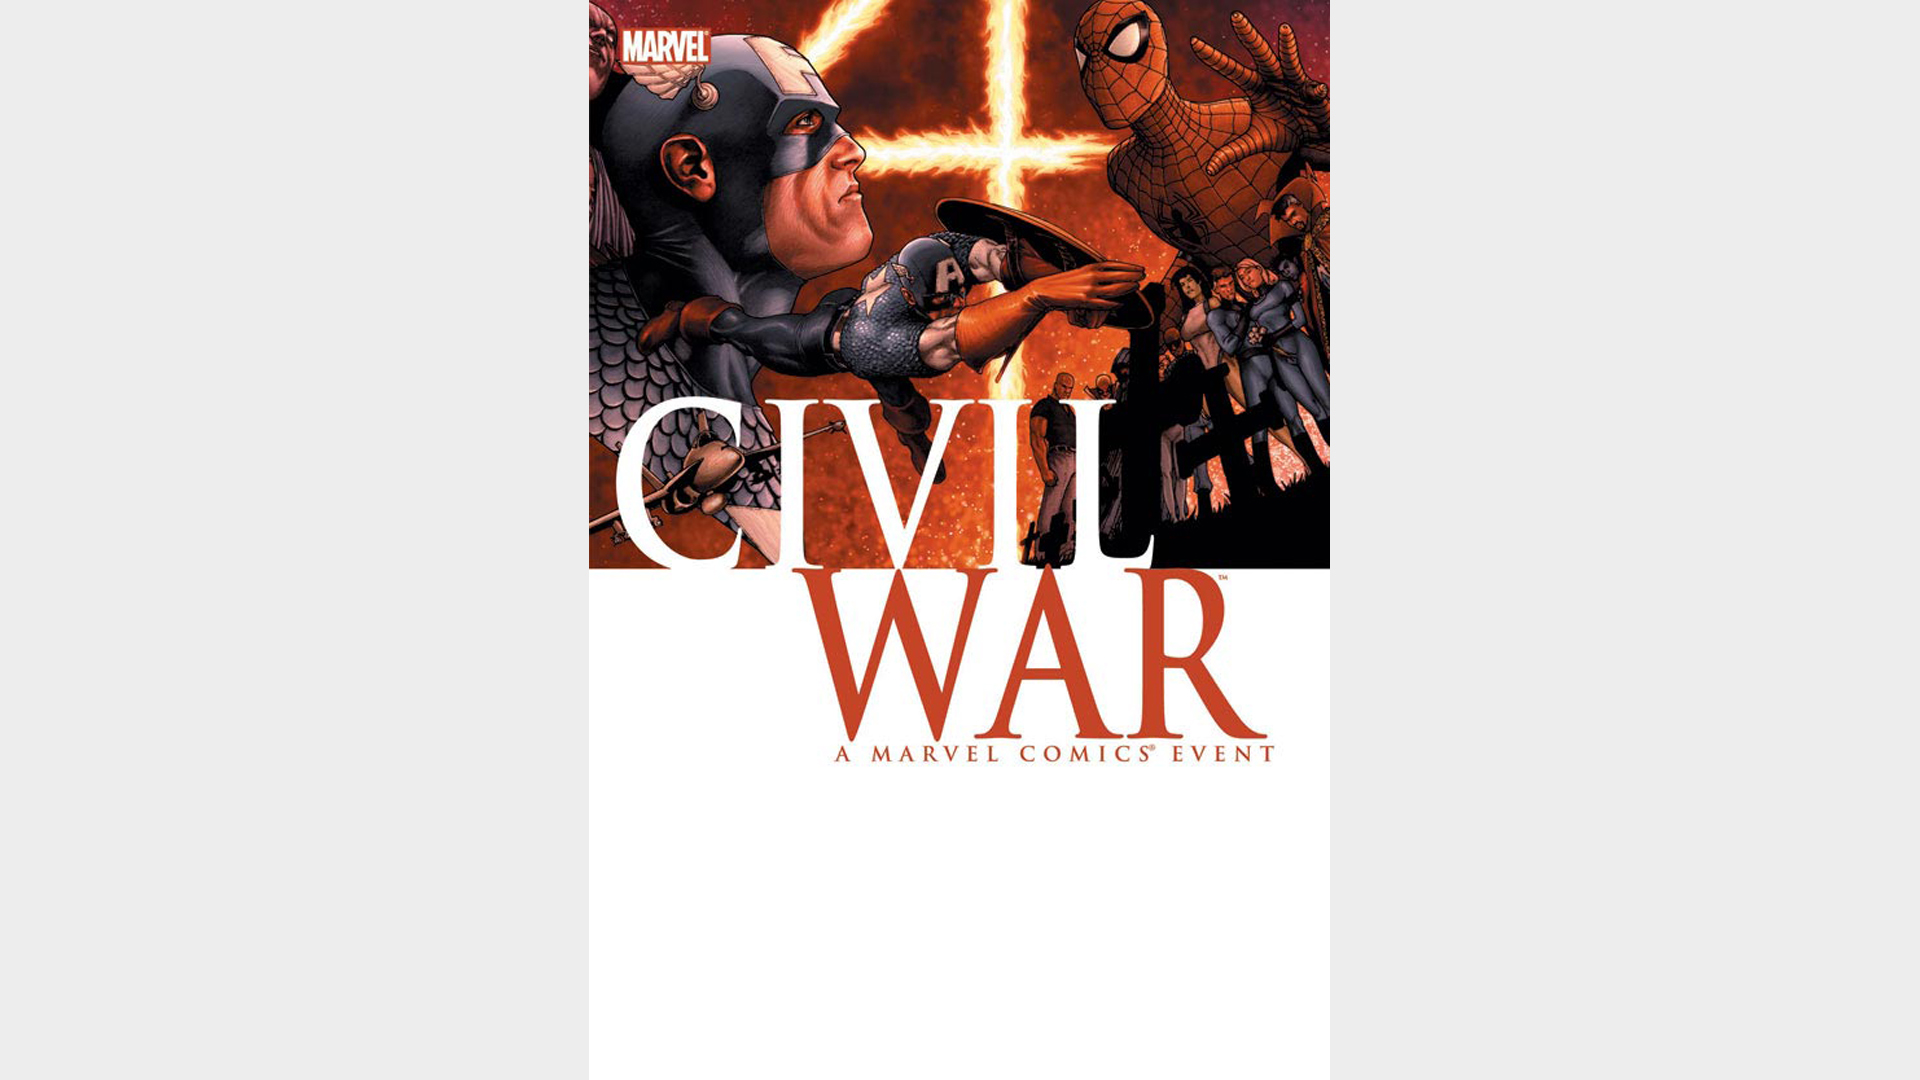 Guerra civil